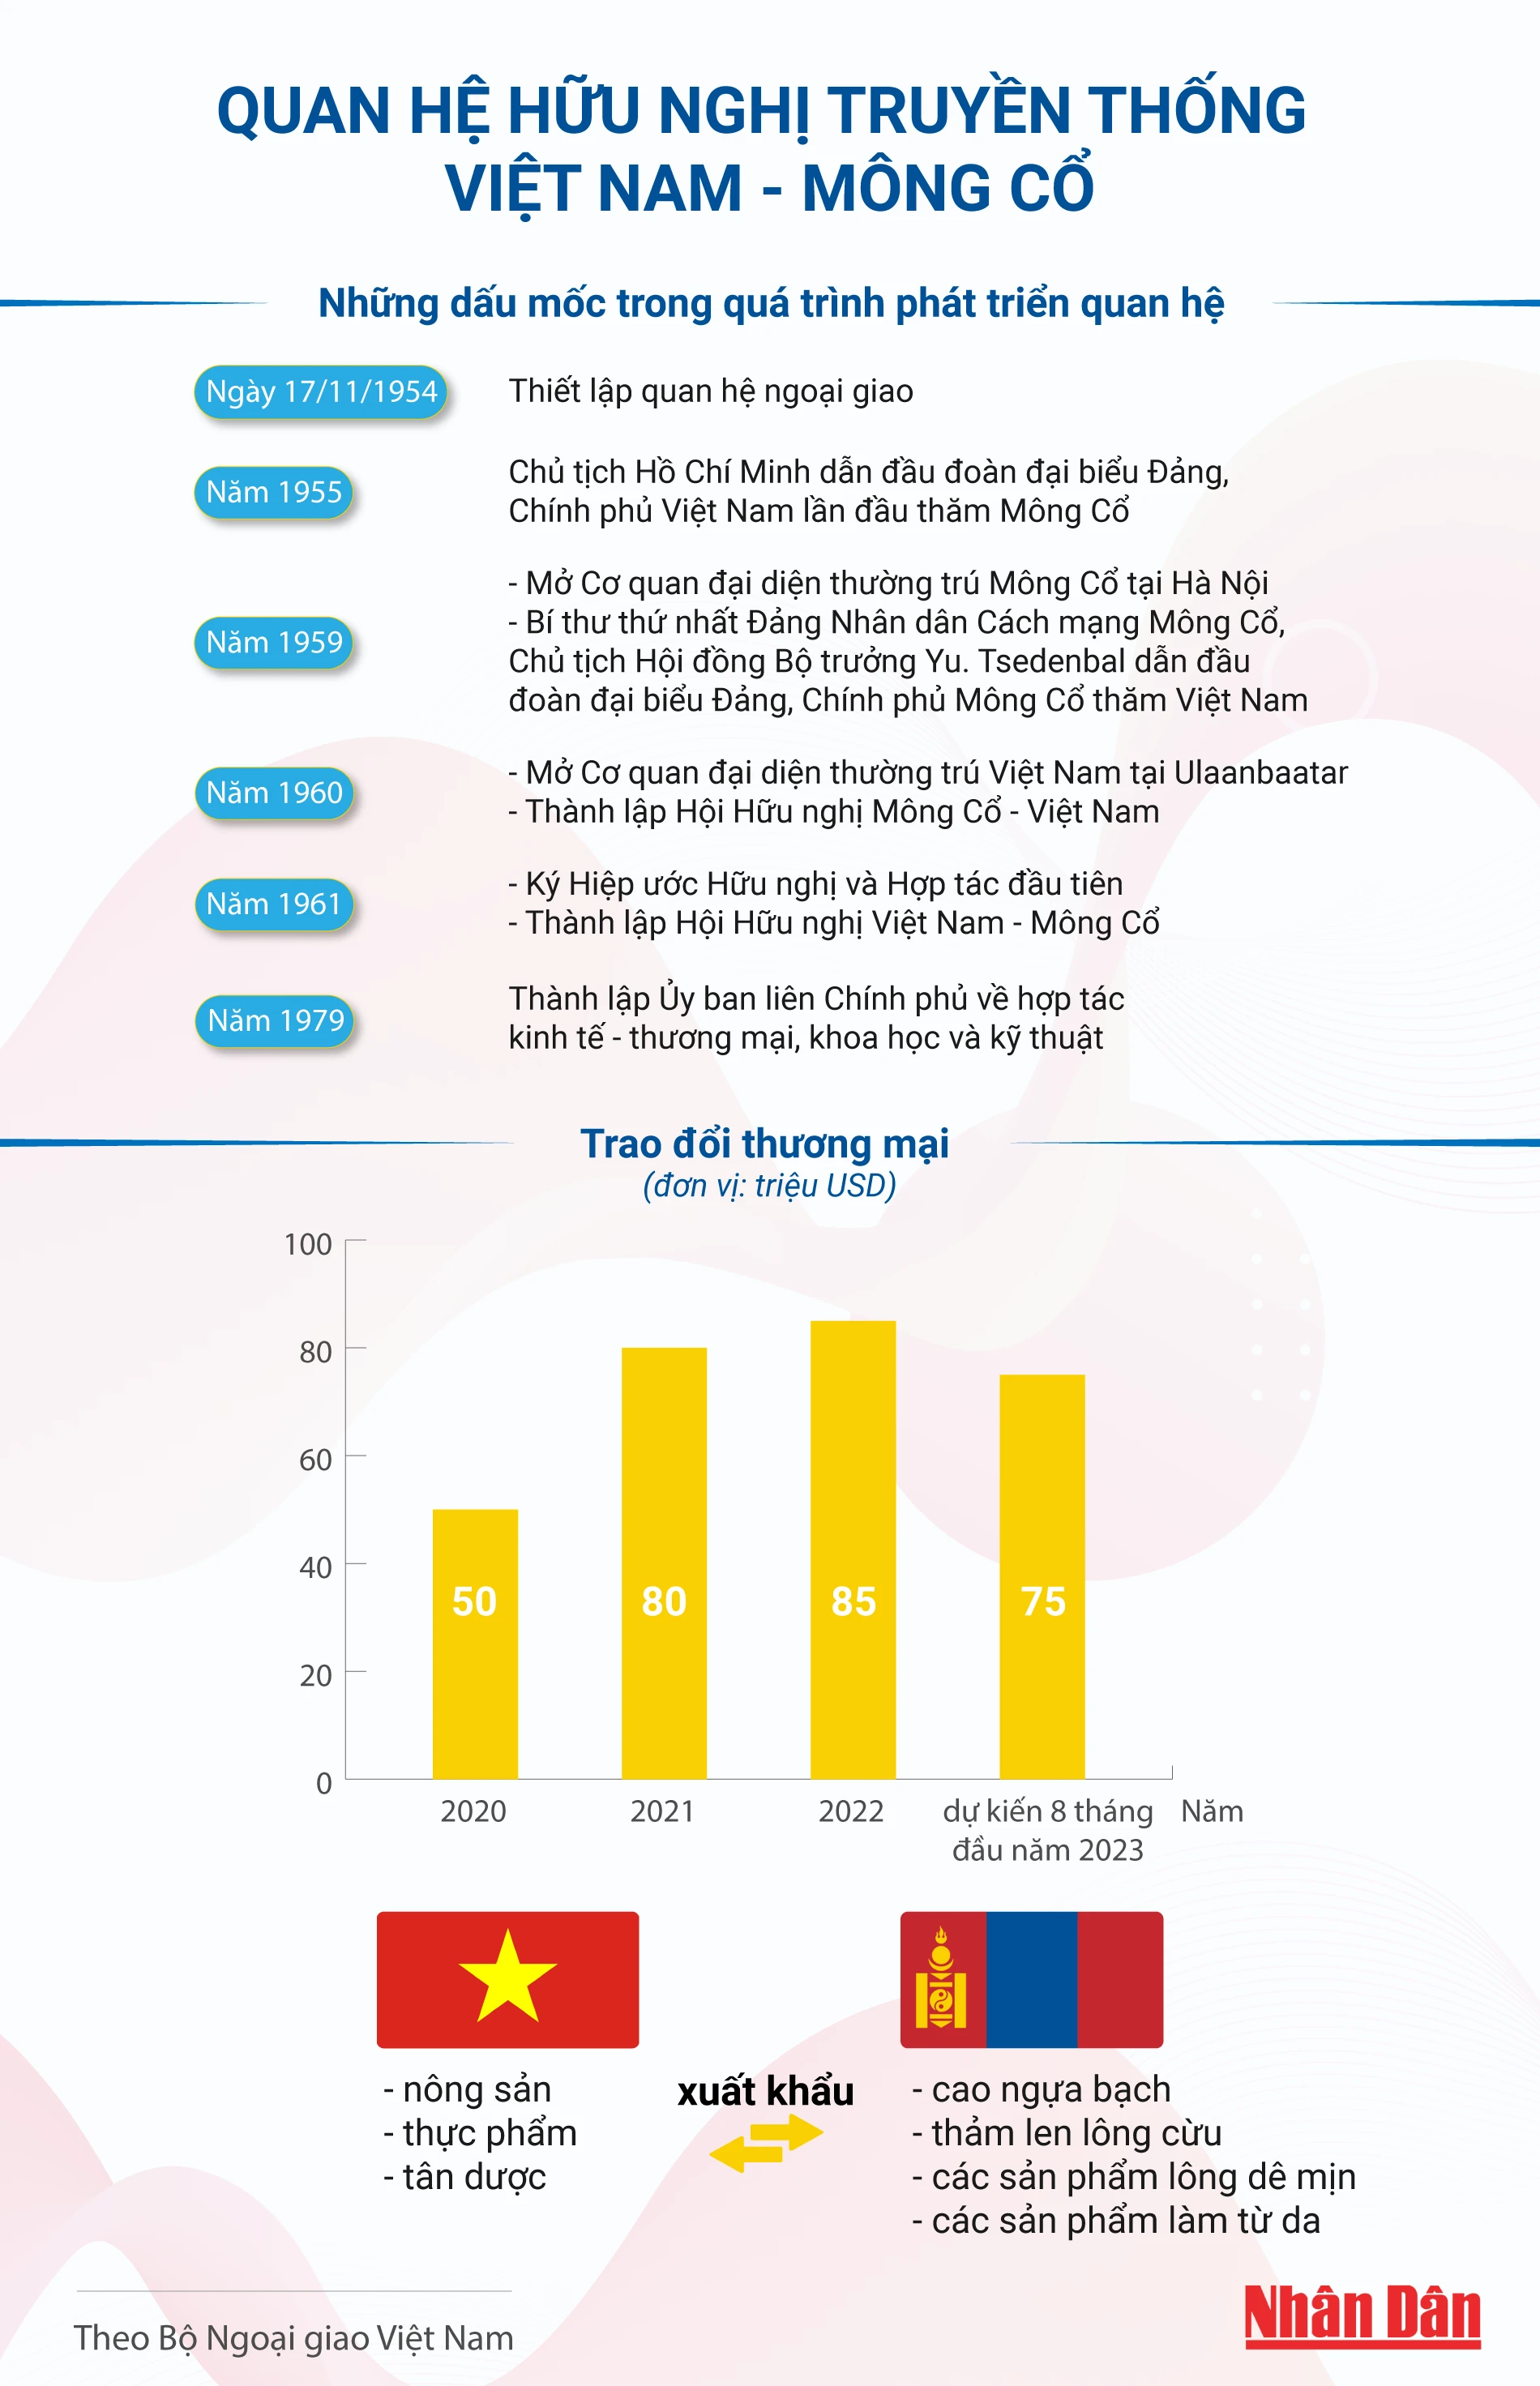 [Infographic] Quan hệ hữu nghị truyền thống Việt Nam-Mông Cổ ảnh 1